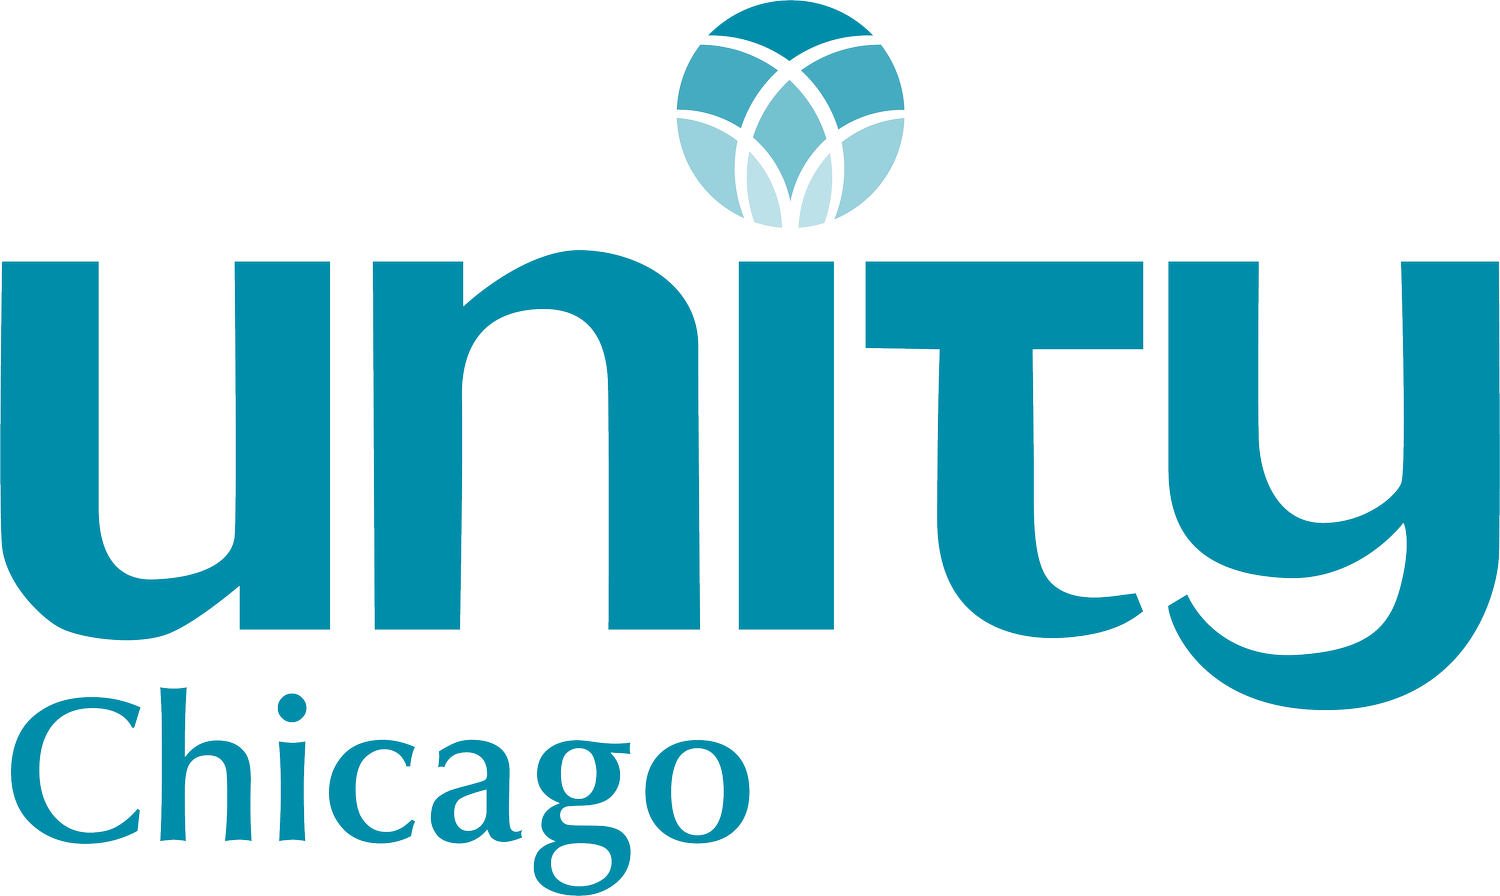 Unity Chicago